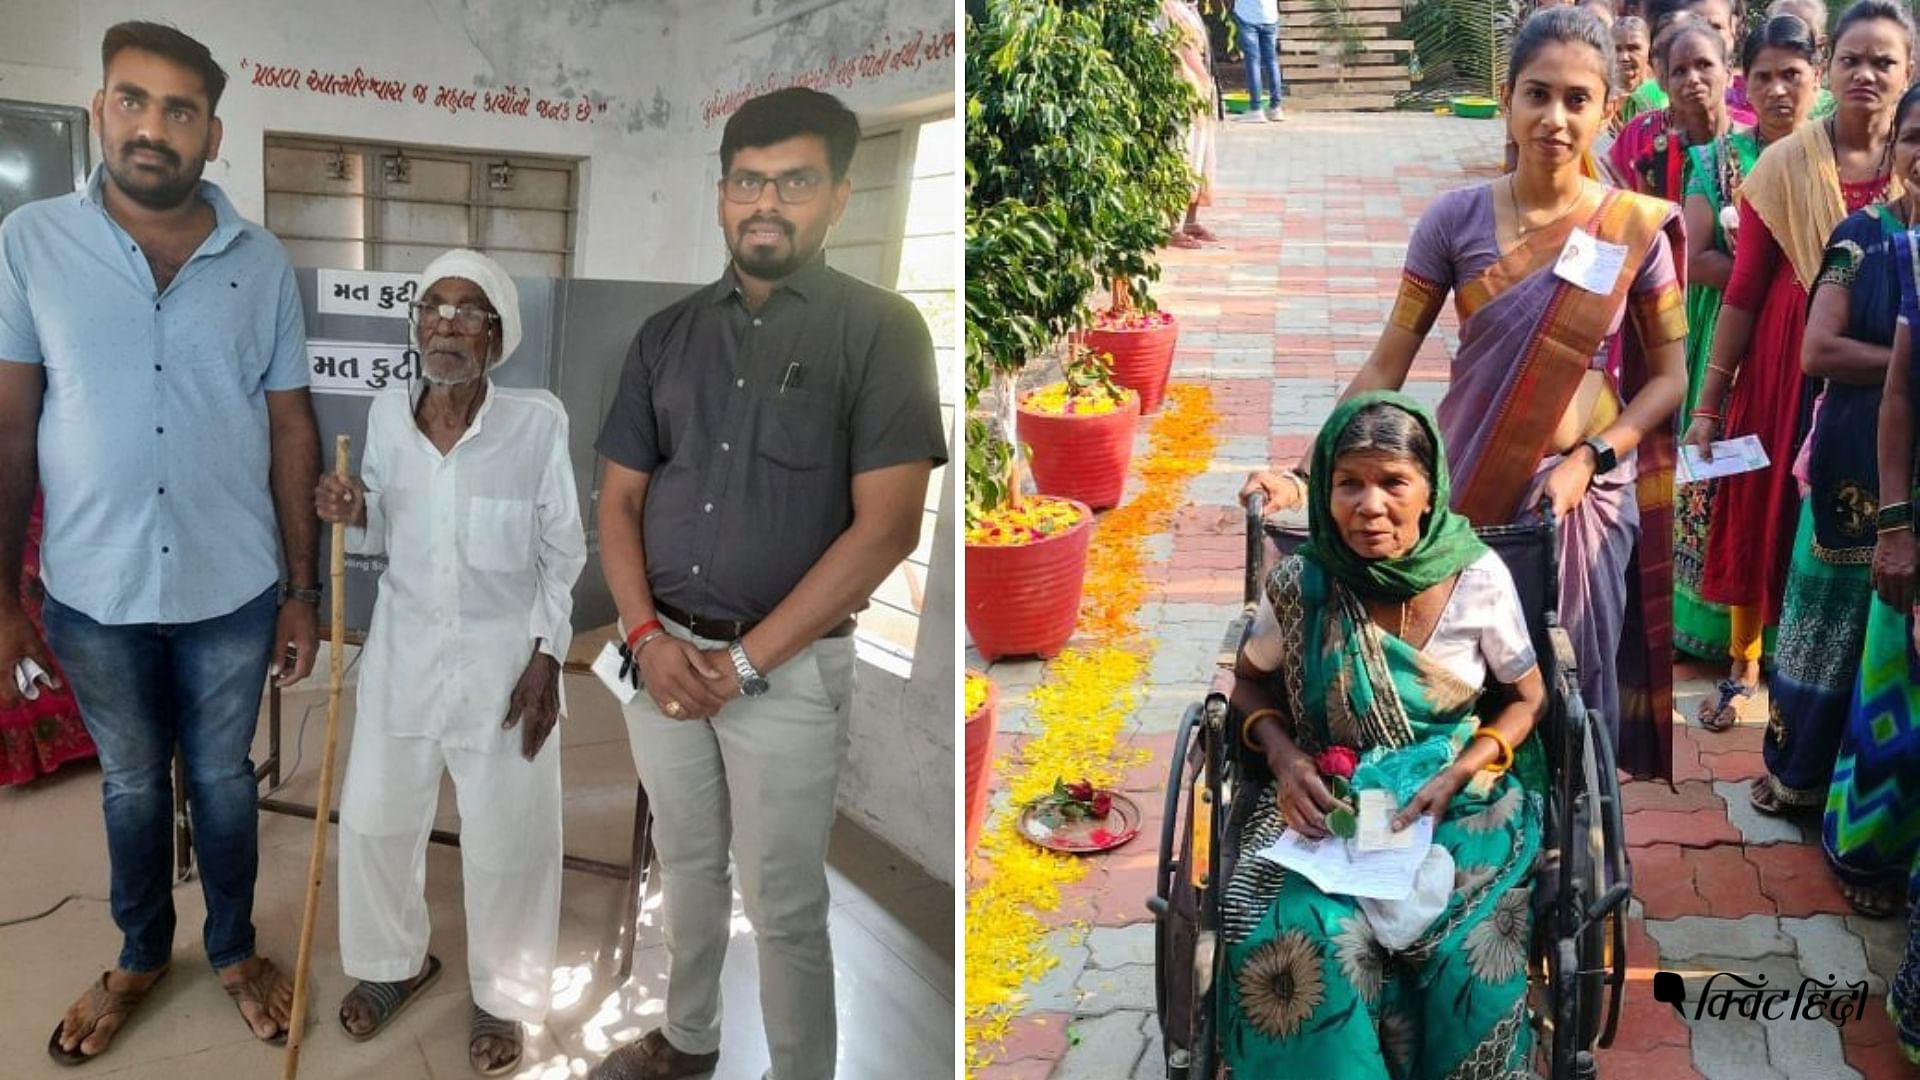 <div class="paragraphs"><p>Gujarat: किसी की उम्र 104, तो कोई व्हीलचेयर पर सवार, वोटिंग की खूबसूरत तस्वीरें </p></div>